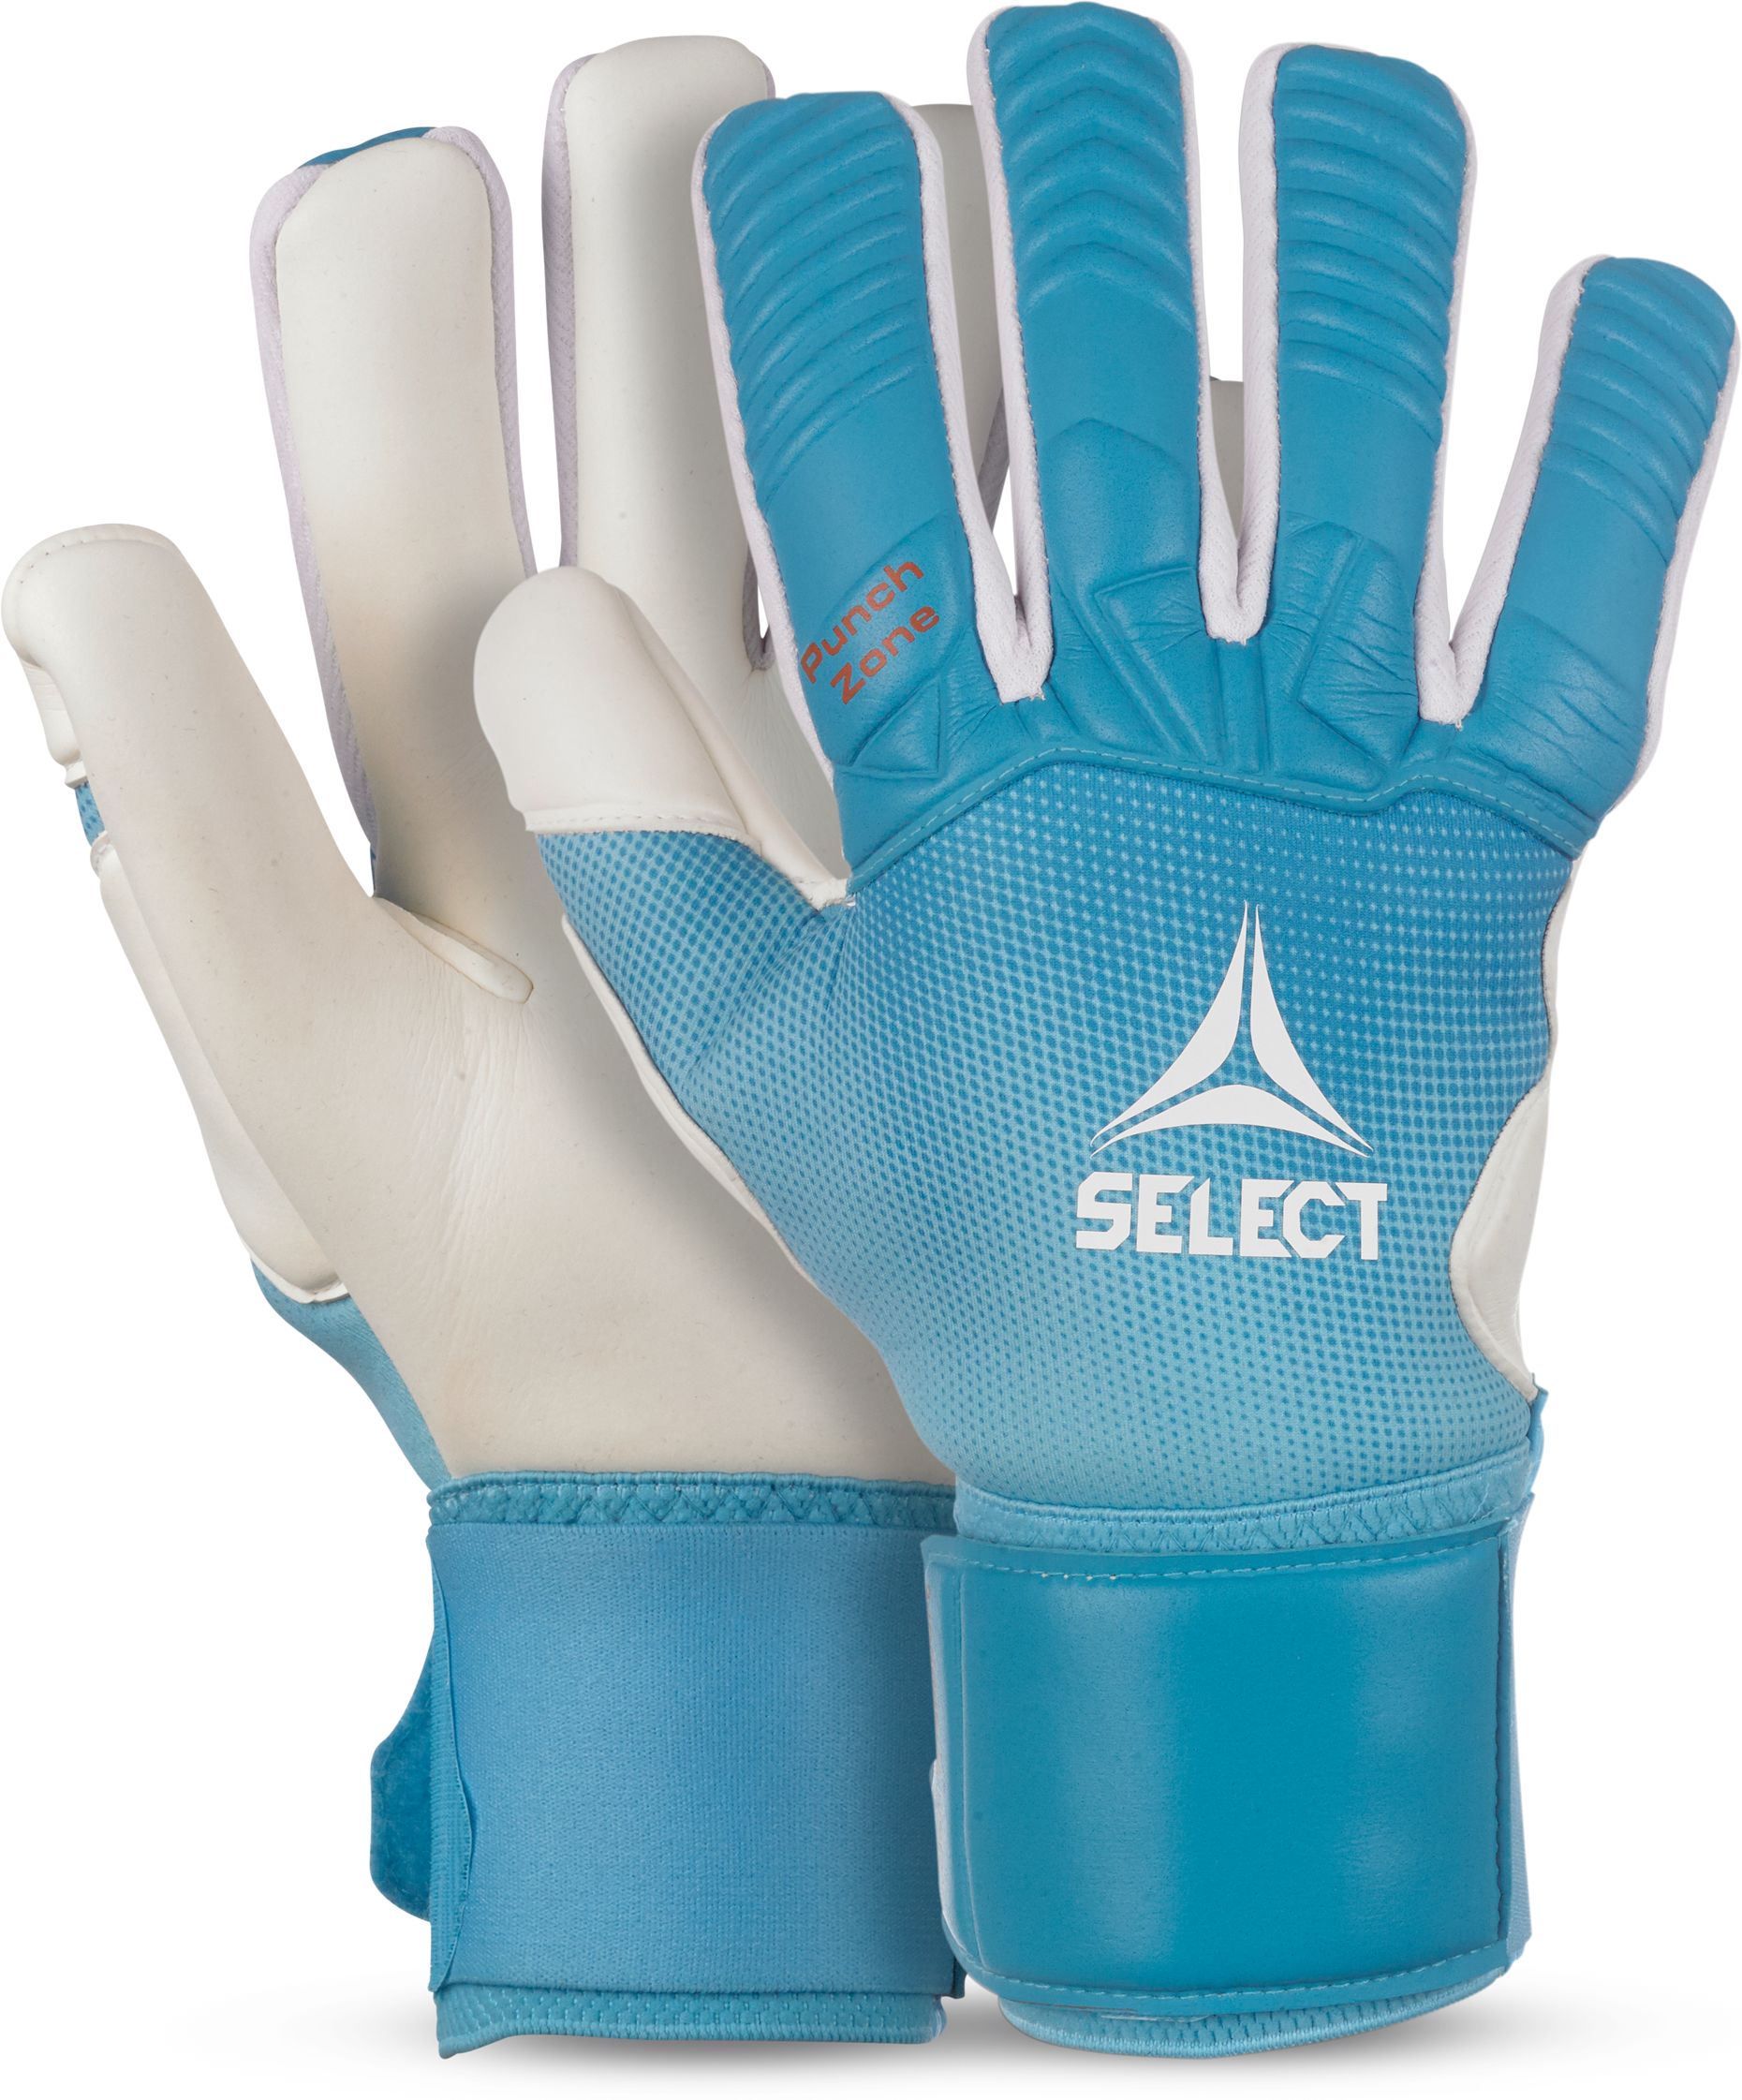 SELECT, GK gloves 33 Allround v23